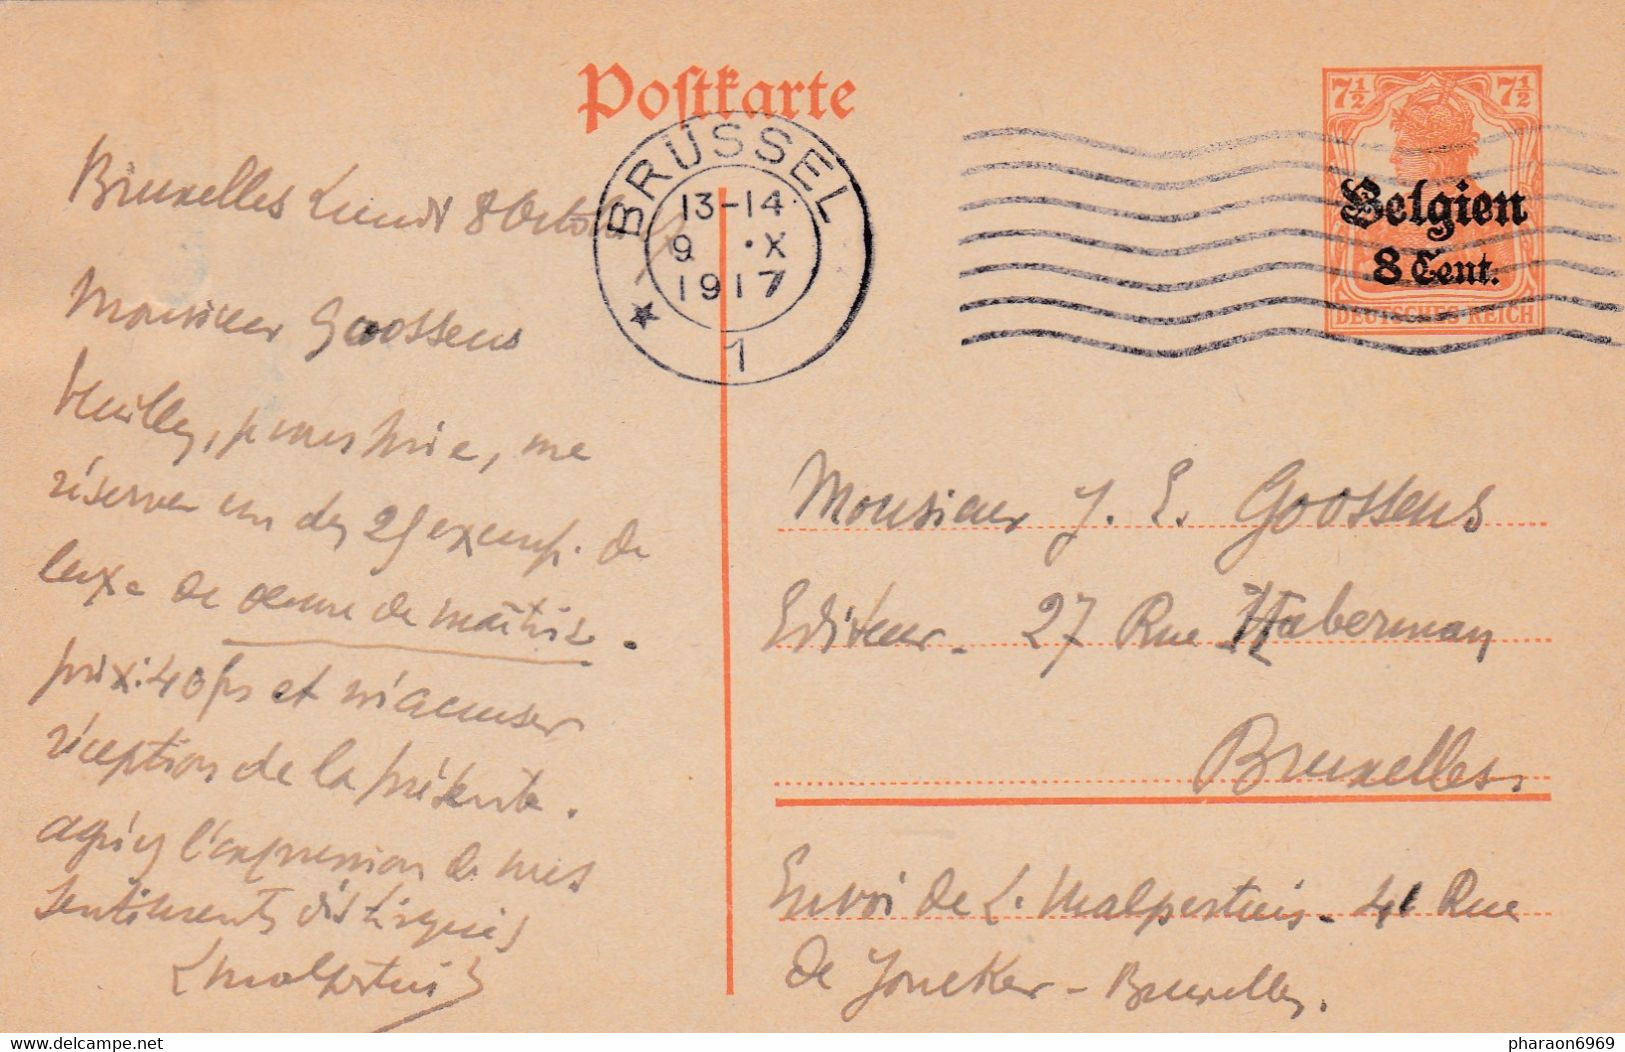 Carte Entier Postal Brussel - Ocupación Alemana